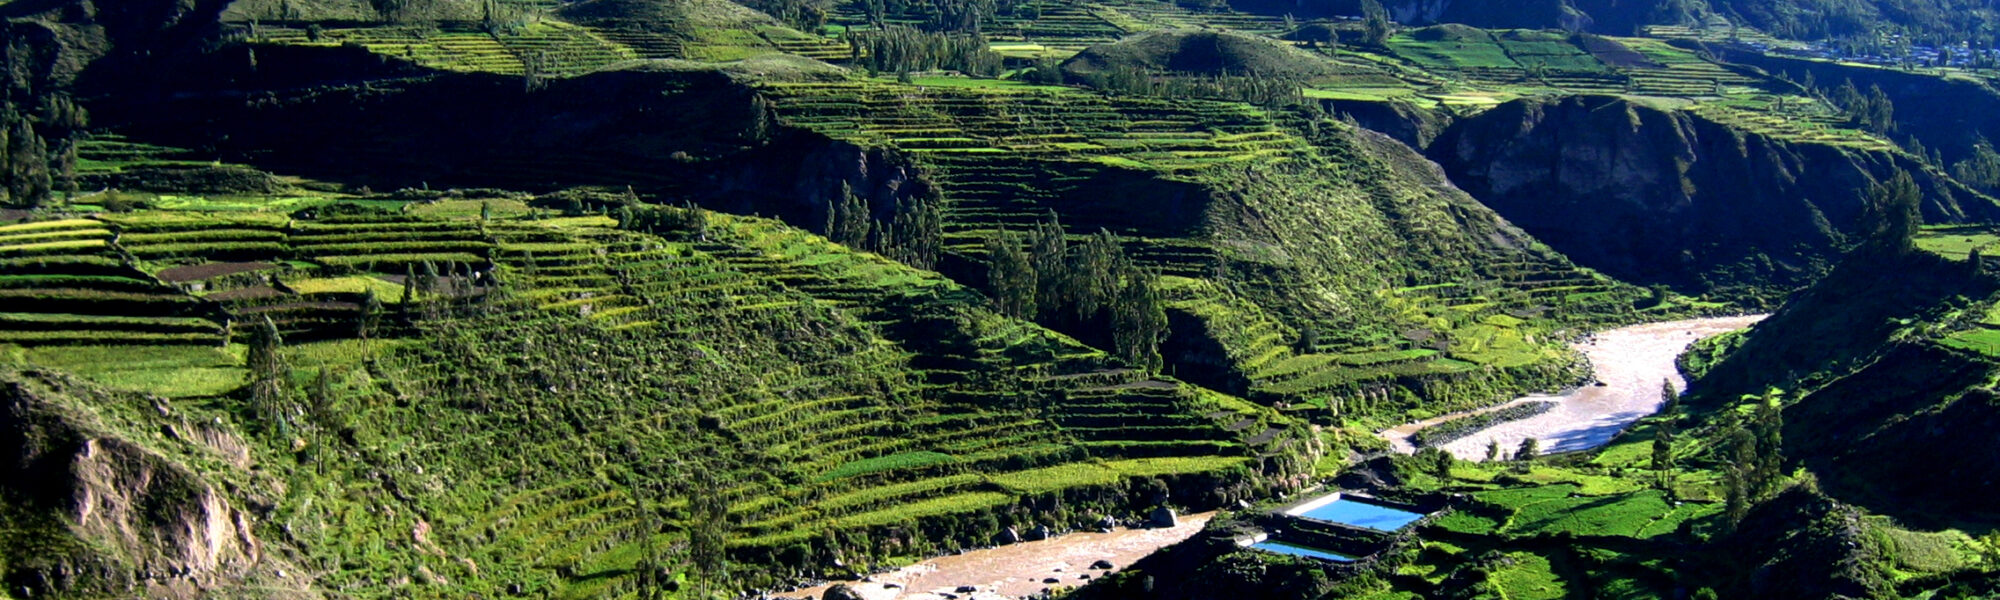 Inca Valley, Peru.